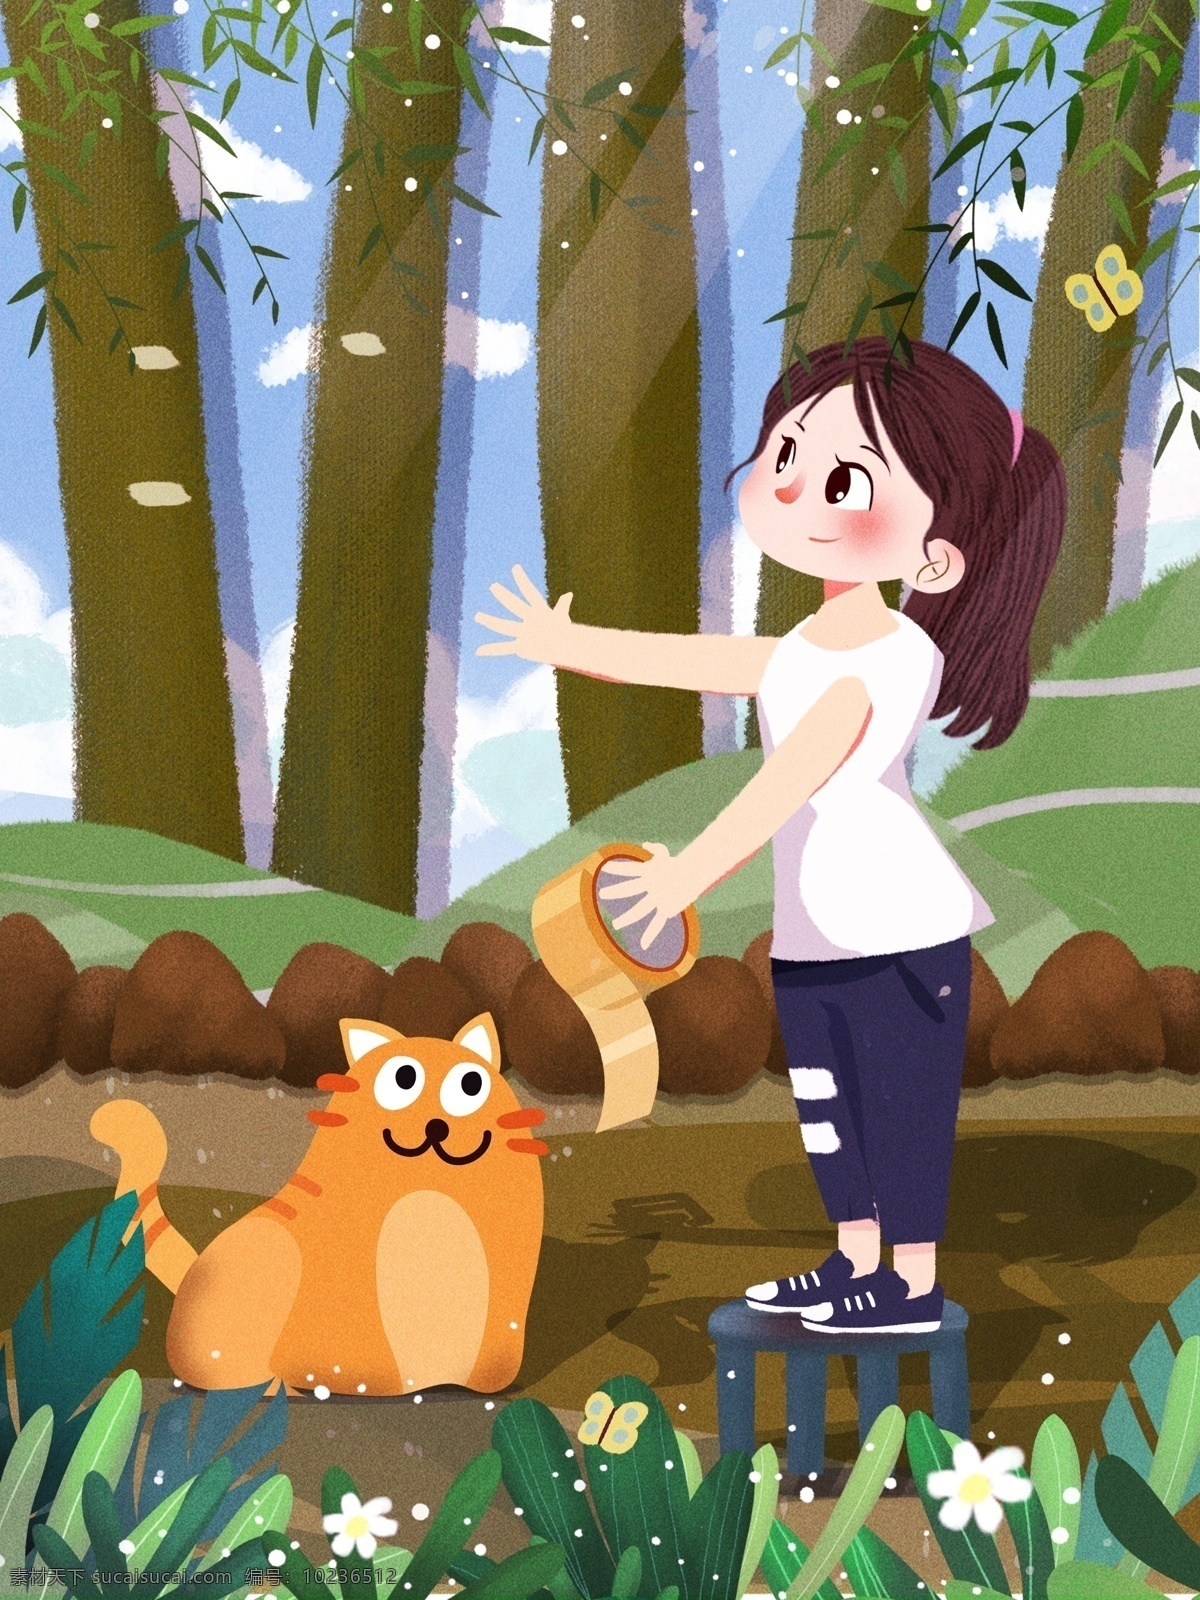 原创 插画 你好 五月 卡通 猫咪 人物 背景 绿色 背景设计 旅游背景 女孩